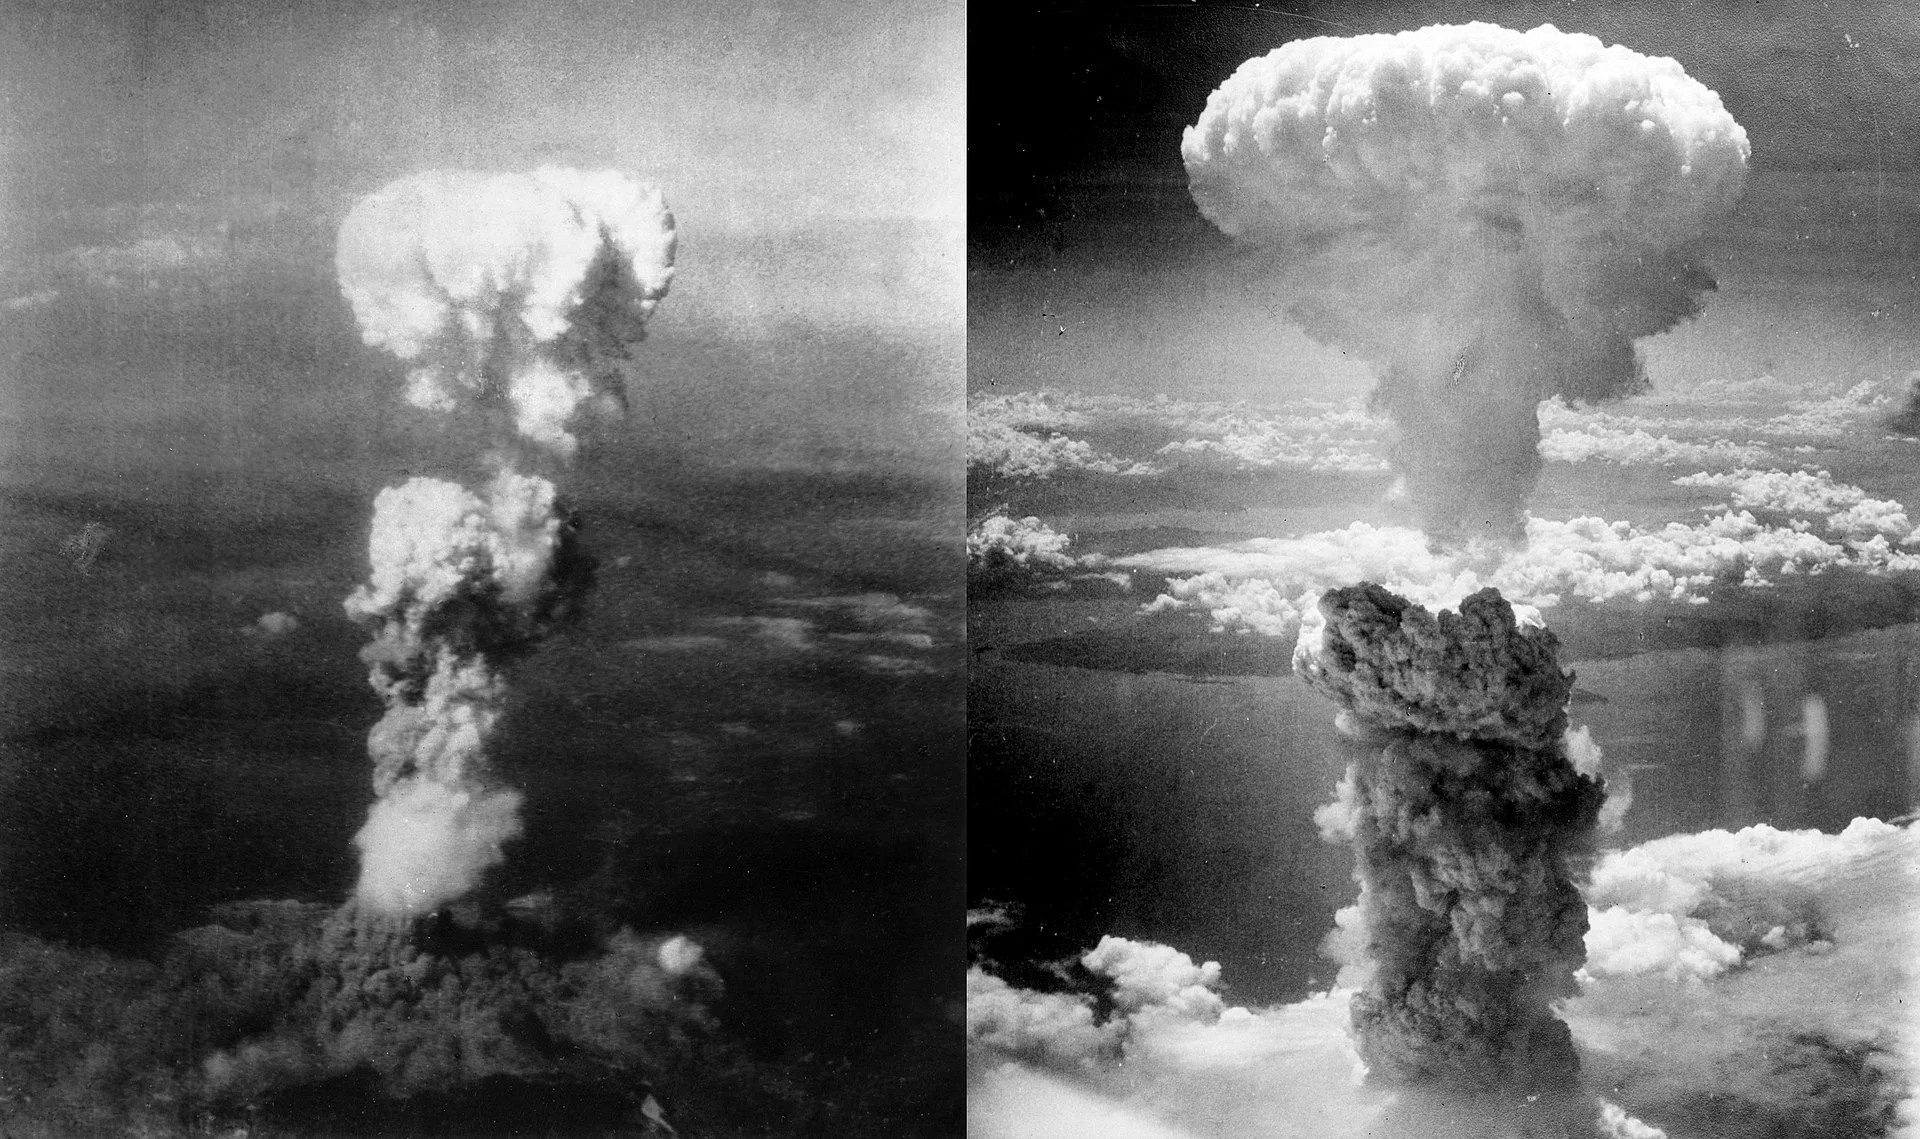 Ядерный гриб над Хиросимой (слева) и Нагасаки (справа)